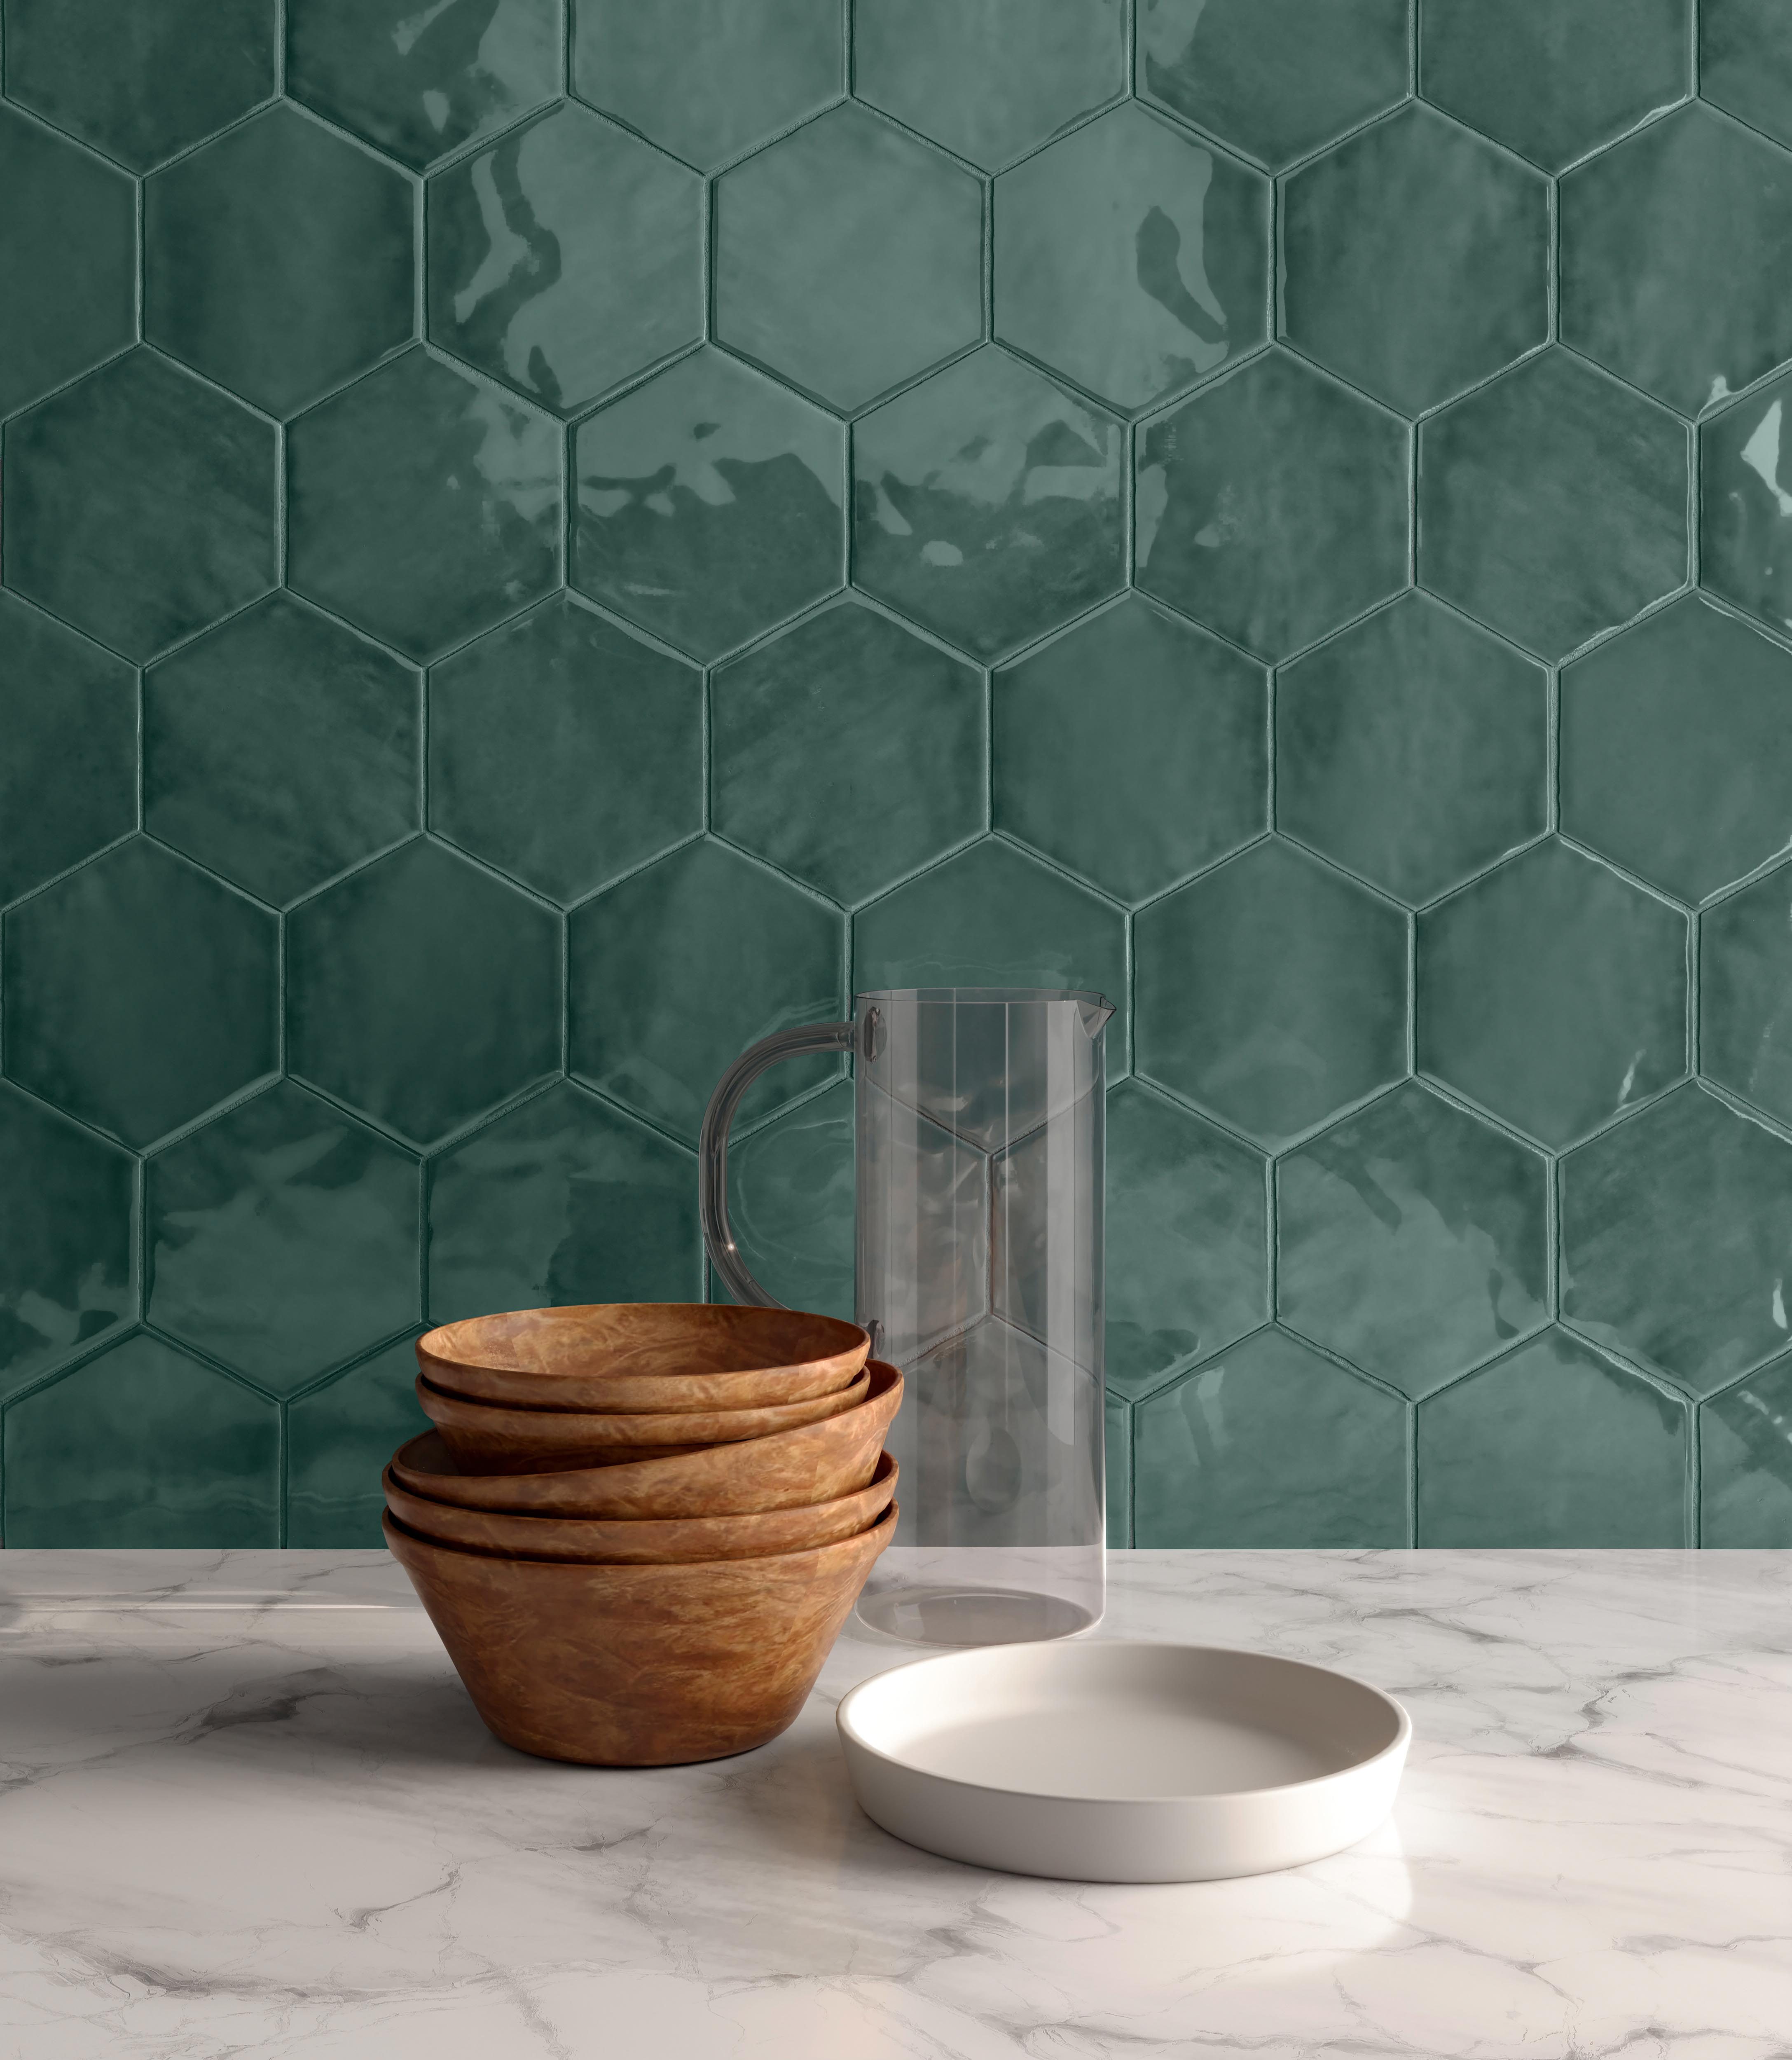 STP-Drift-6in-Emerald-Hexagon-Glossy-Pressed-Glazed-Ceramic-Tile_Lifestyle_.jpg